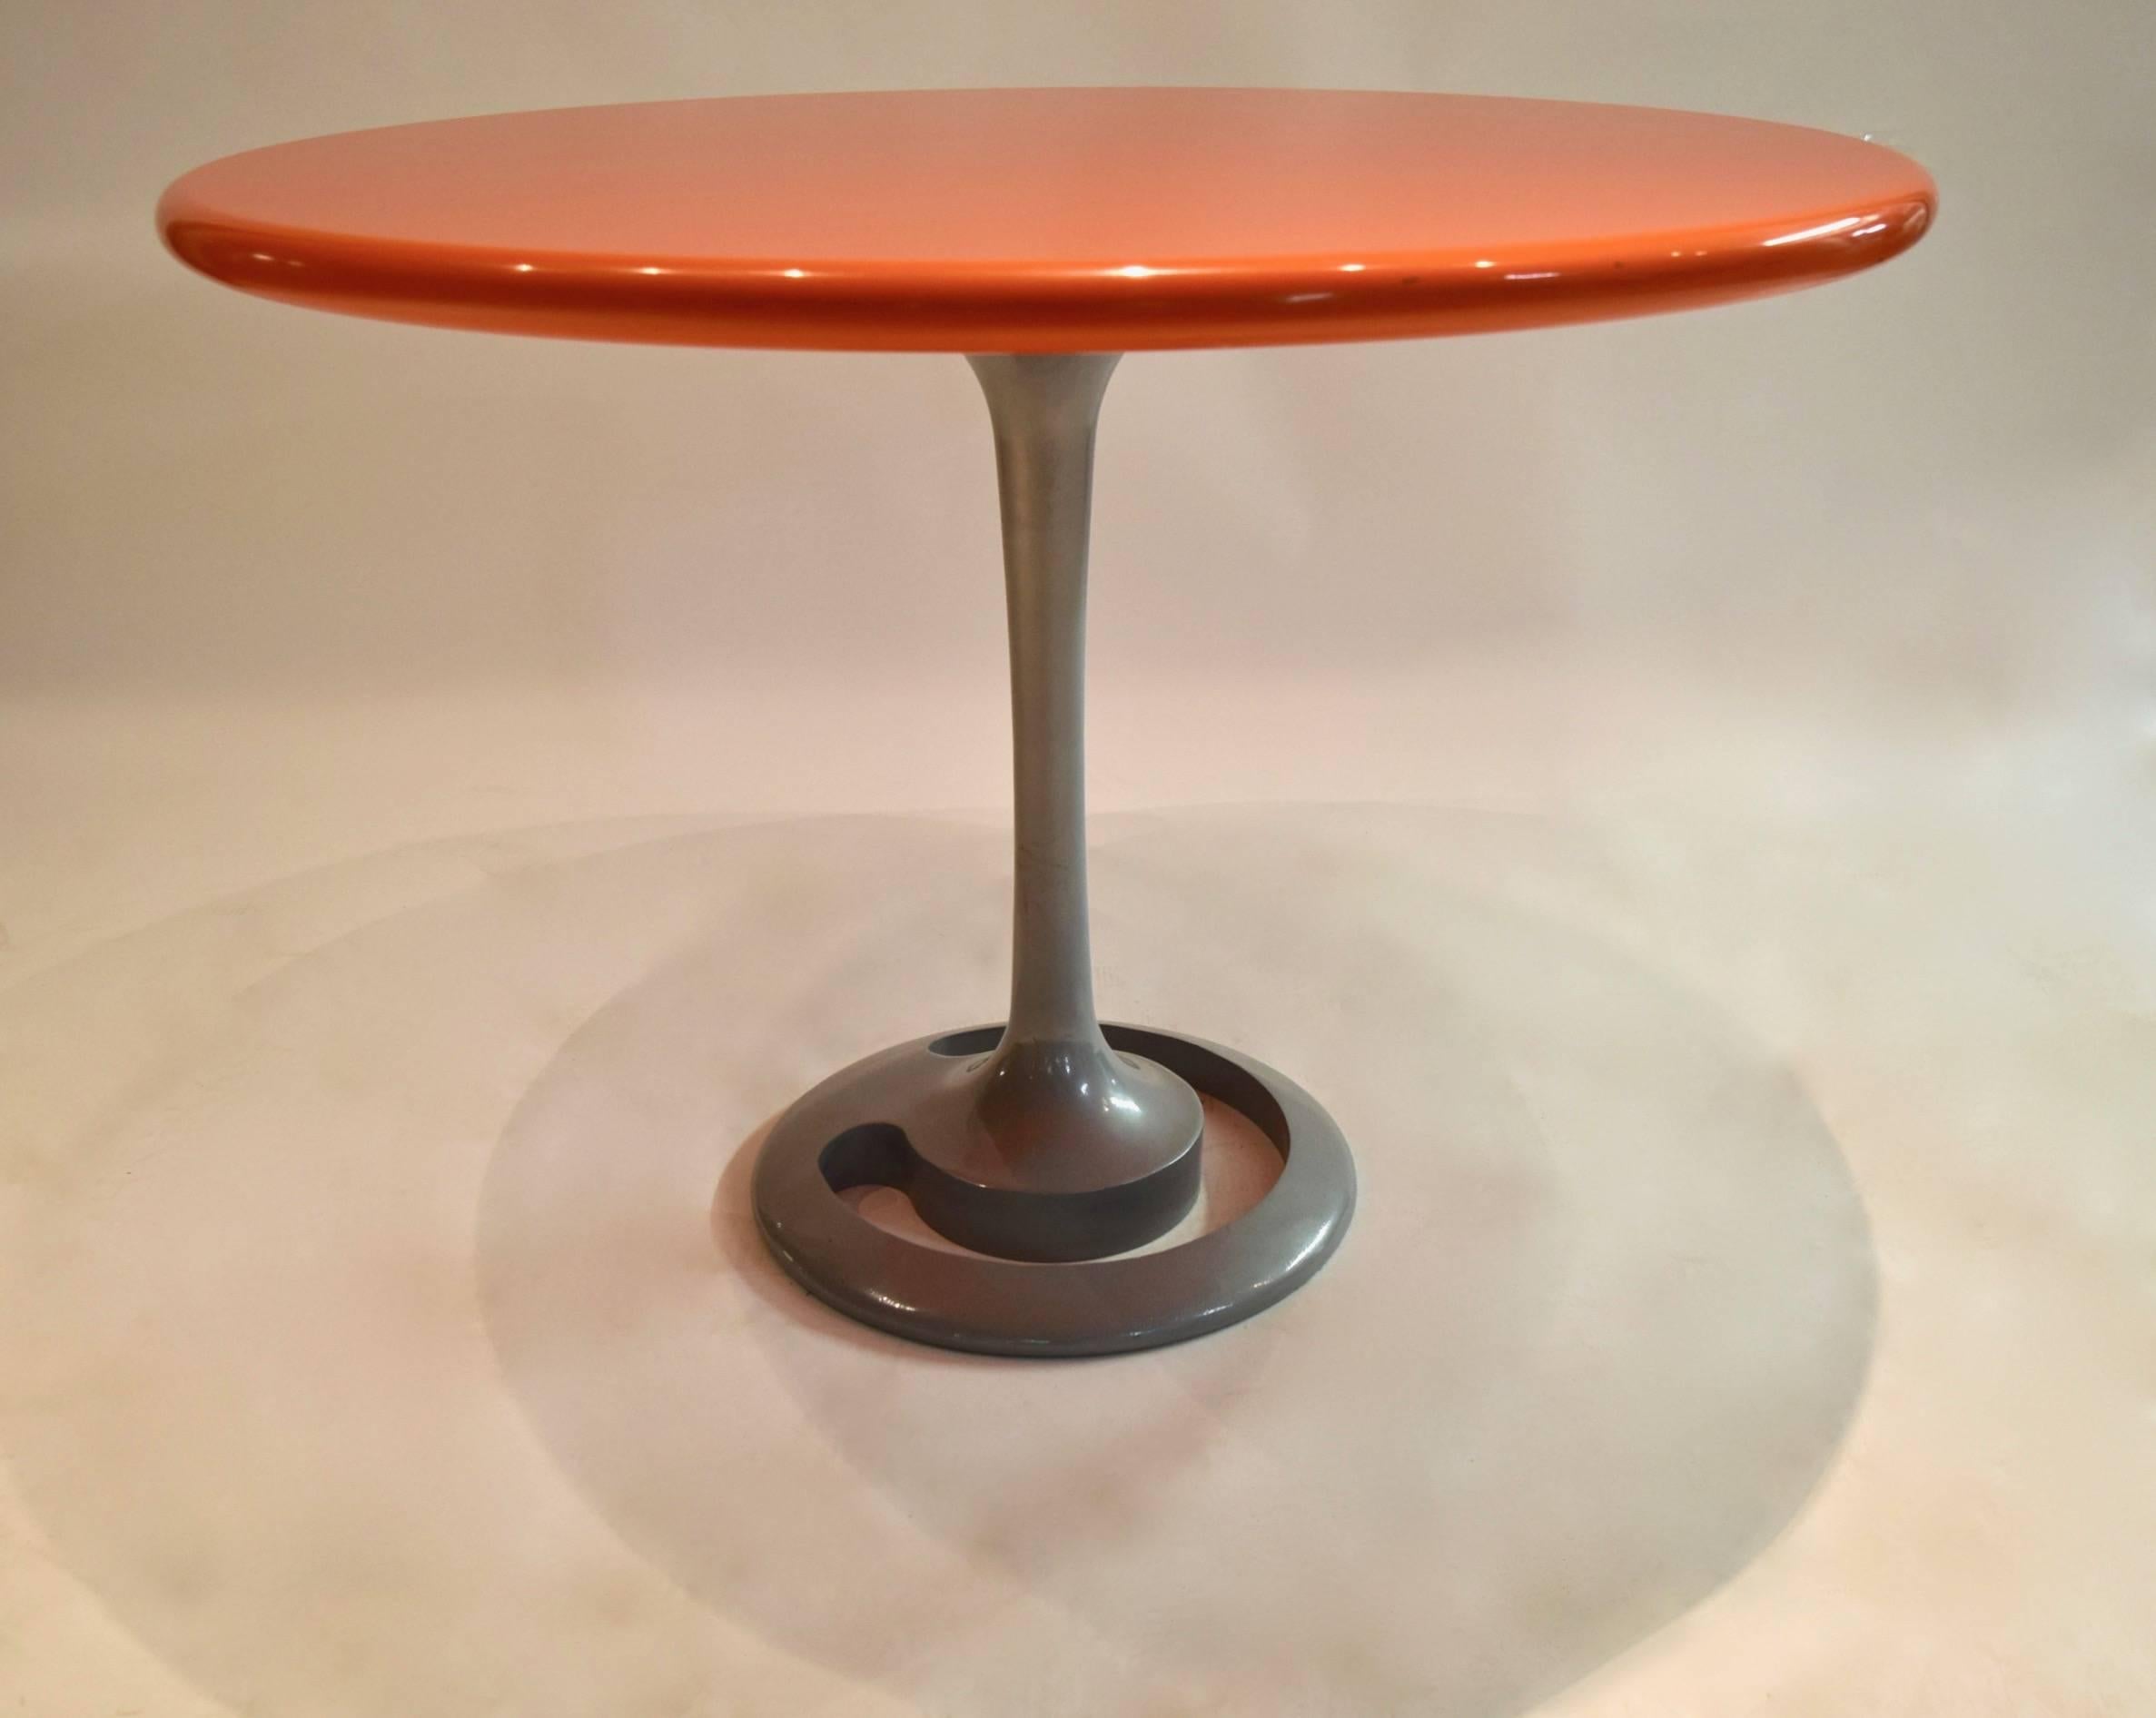 Originaler, runder Esstisch von Komed, entworfen von Marc Newson für das 1999 eröffnete Restaurant 'Canteen' in New York City. Der Tisch besteht aus einer abgerundeten Platte aus dickem, orangefarben lackiertem Holz und einem Fuß aus grauem